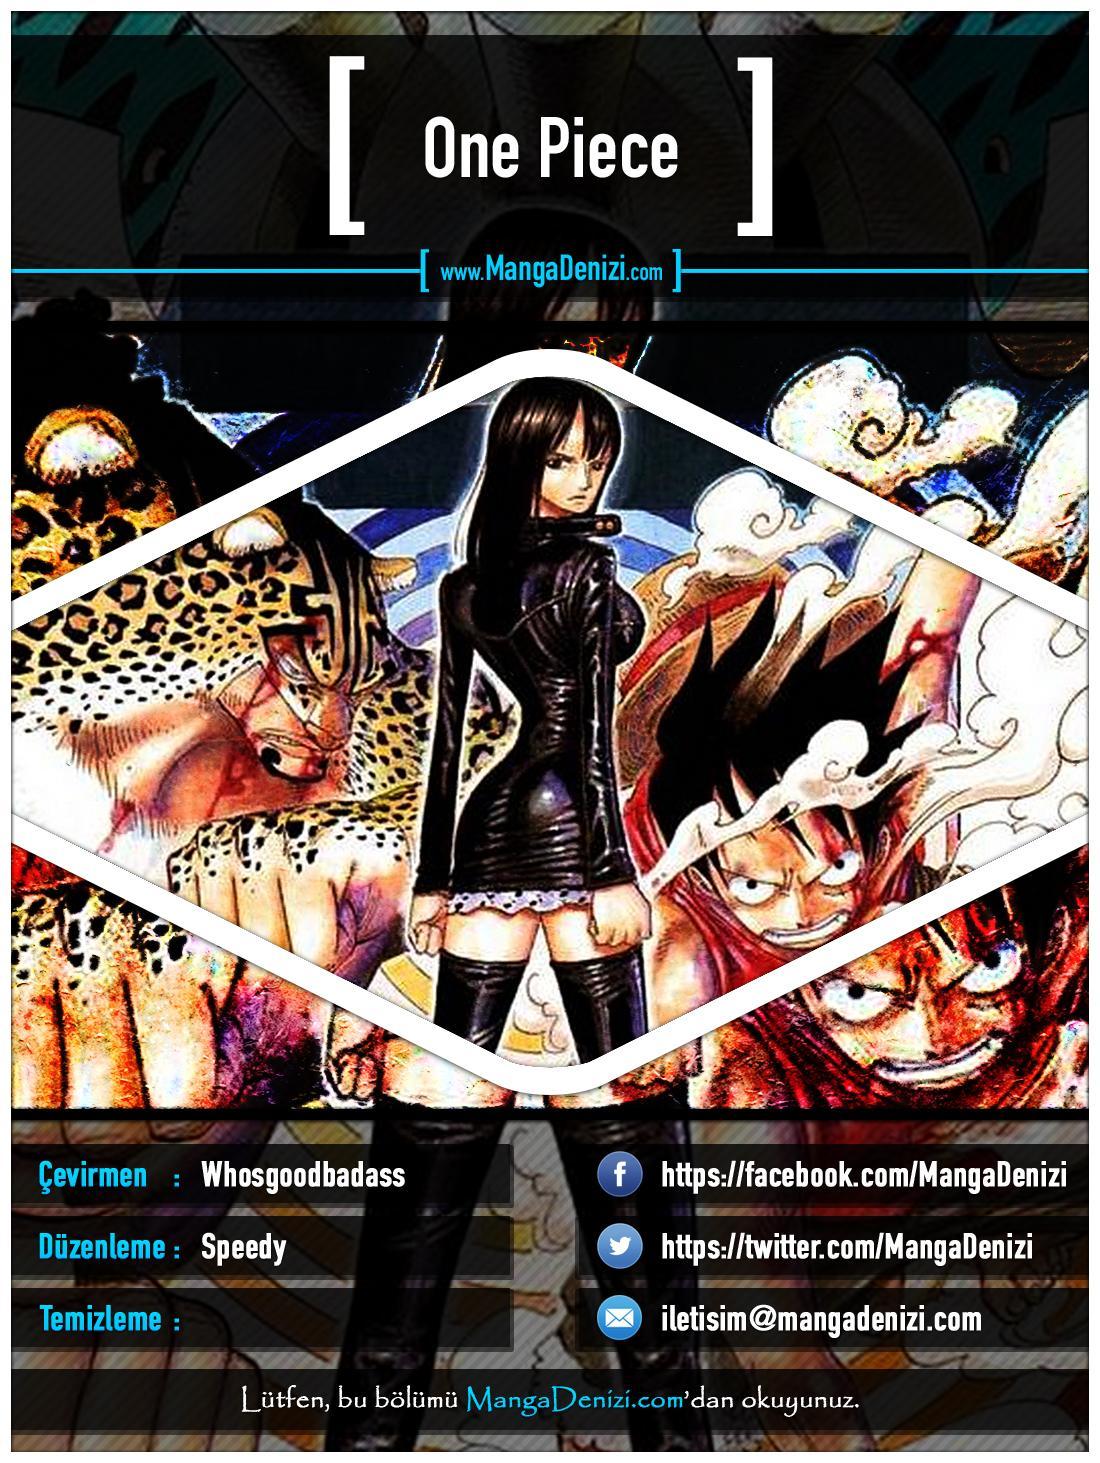 One Piece [Renkli] mangasının 0378 bölümünün 1. sayfasını okuyorsunuz.